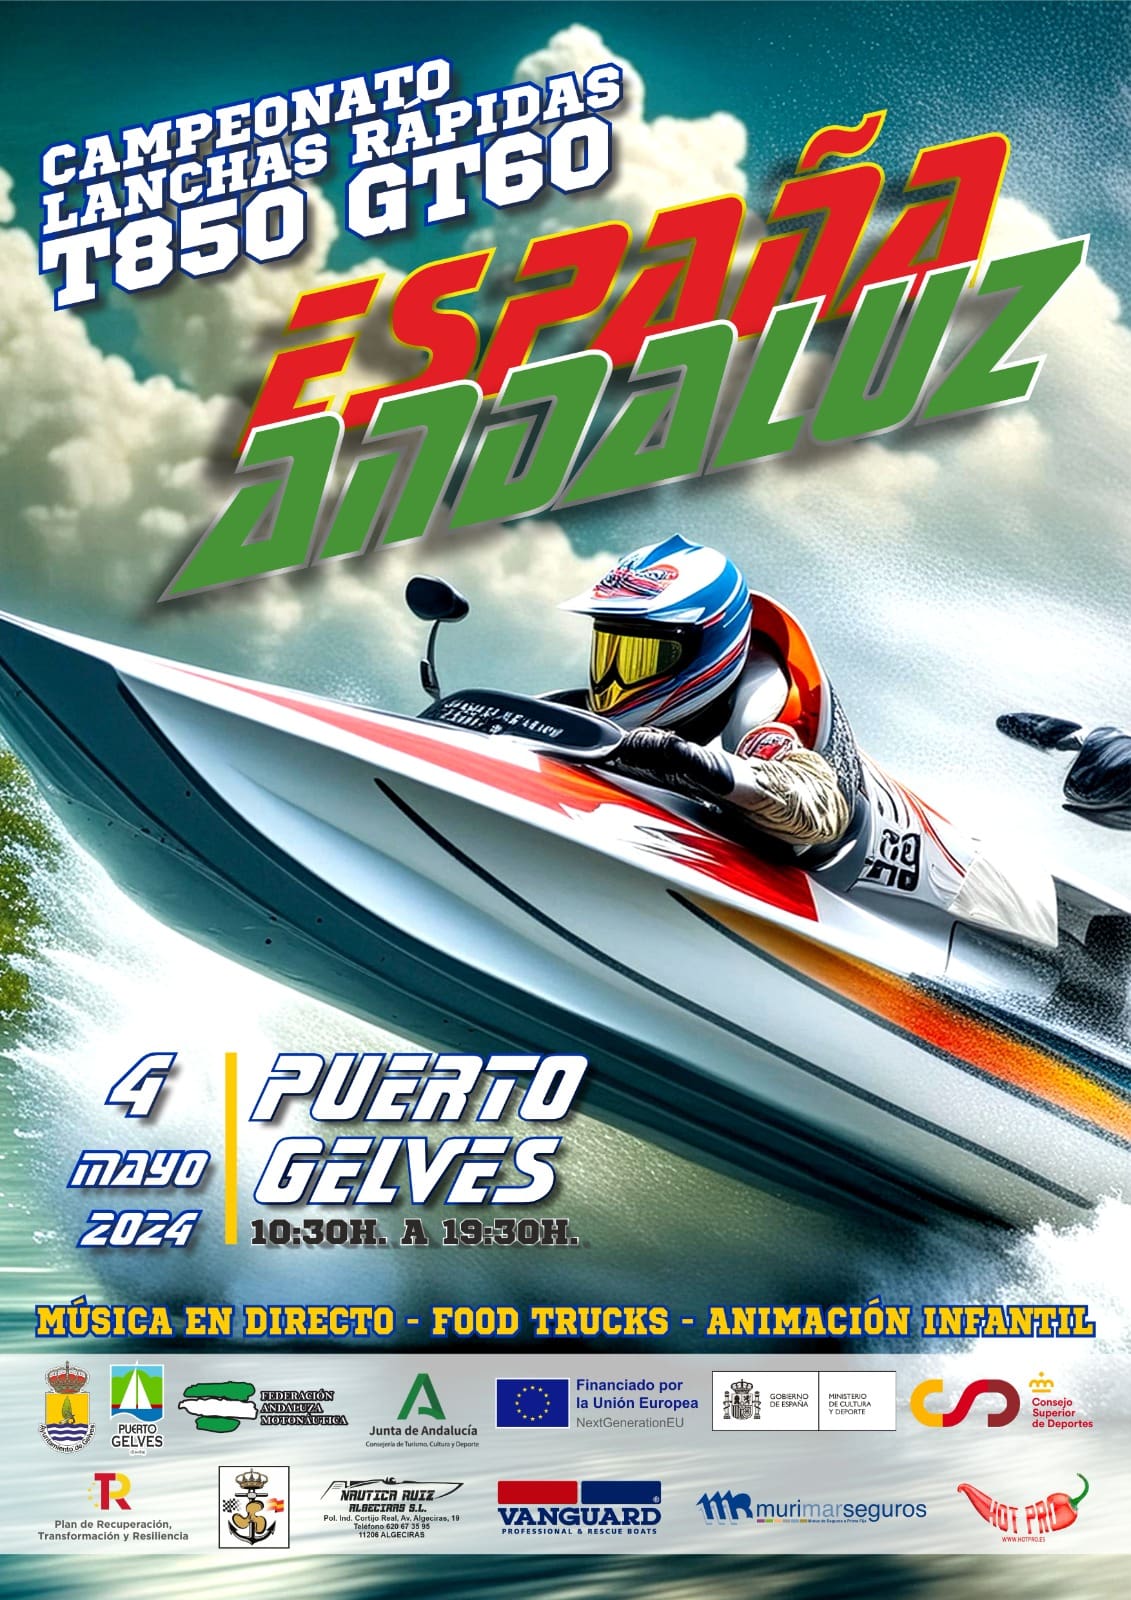 Puerto Gelves, sede de la primera prueba del Campeonato de España y Andalucía de T-850/GT60